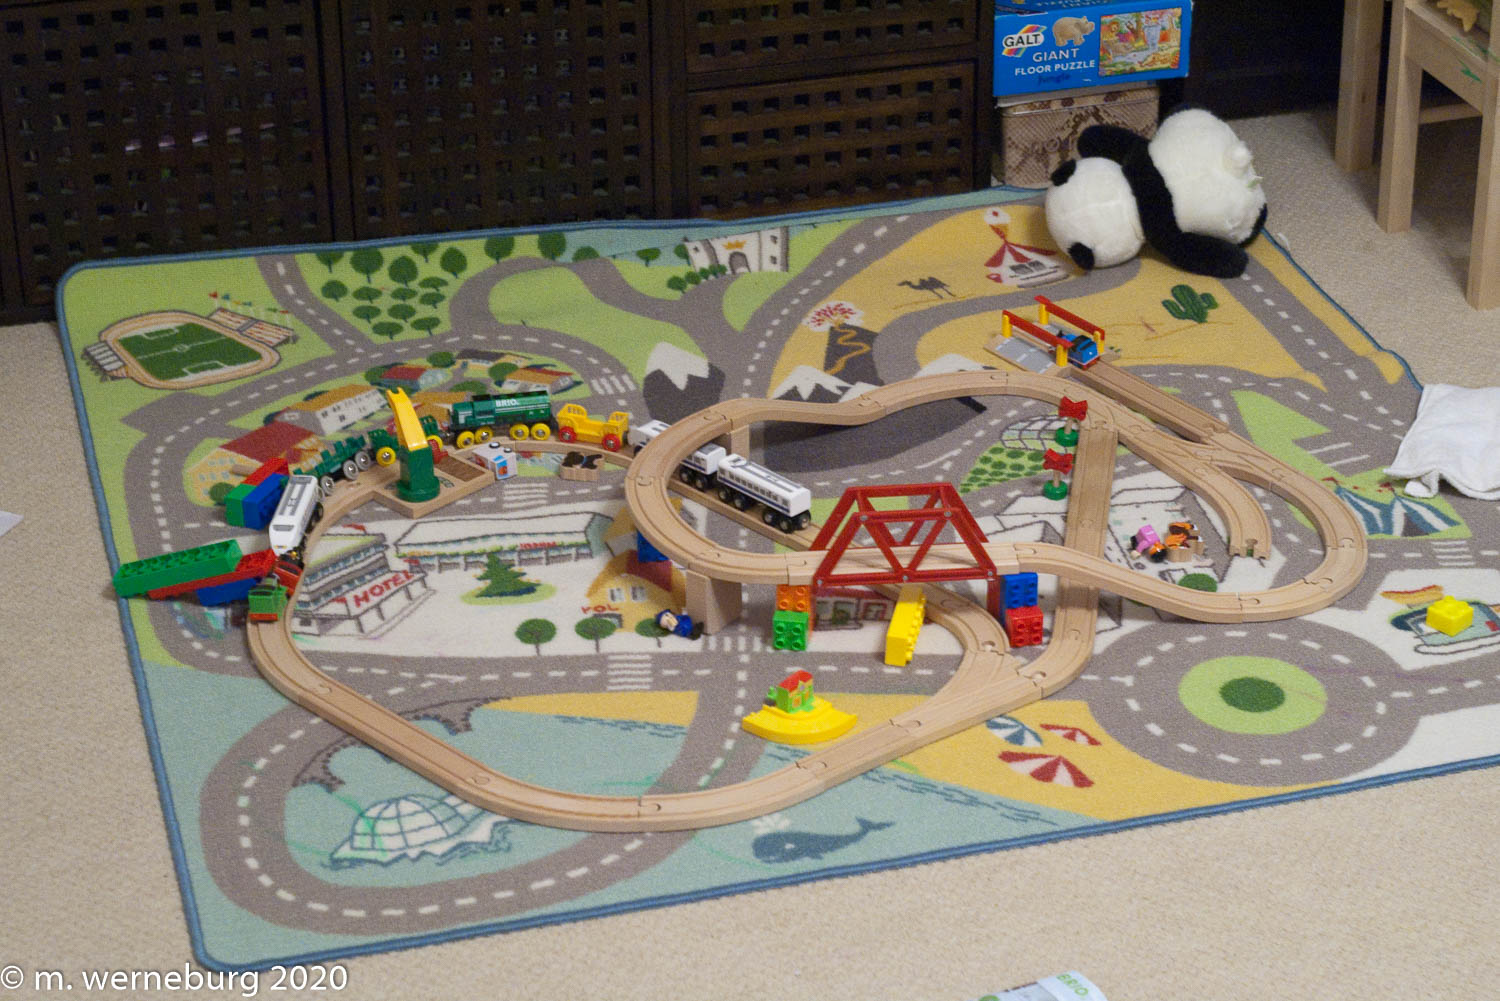 kenny's toy train set